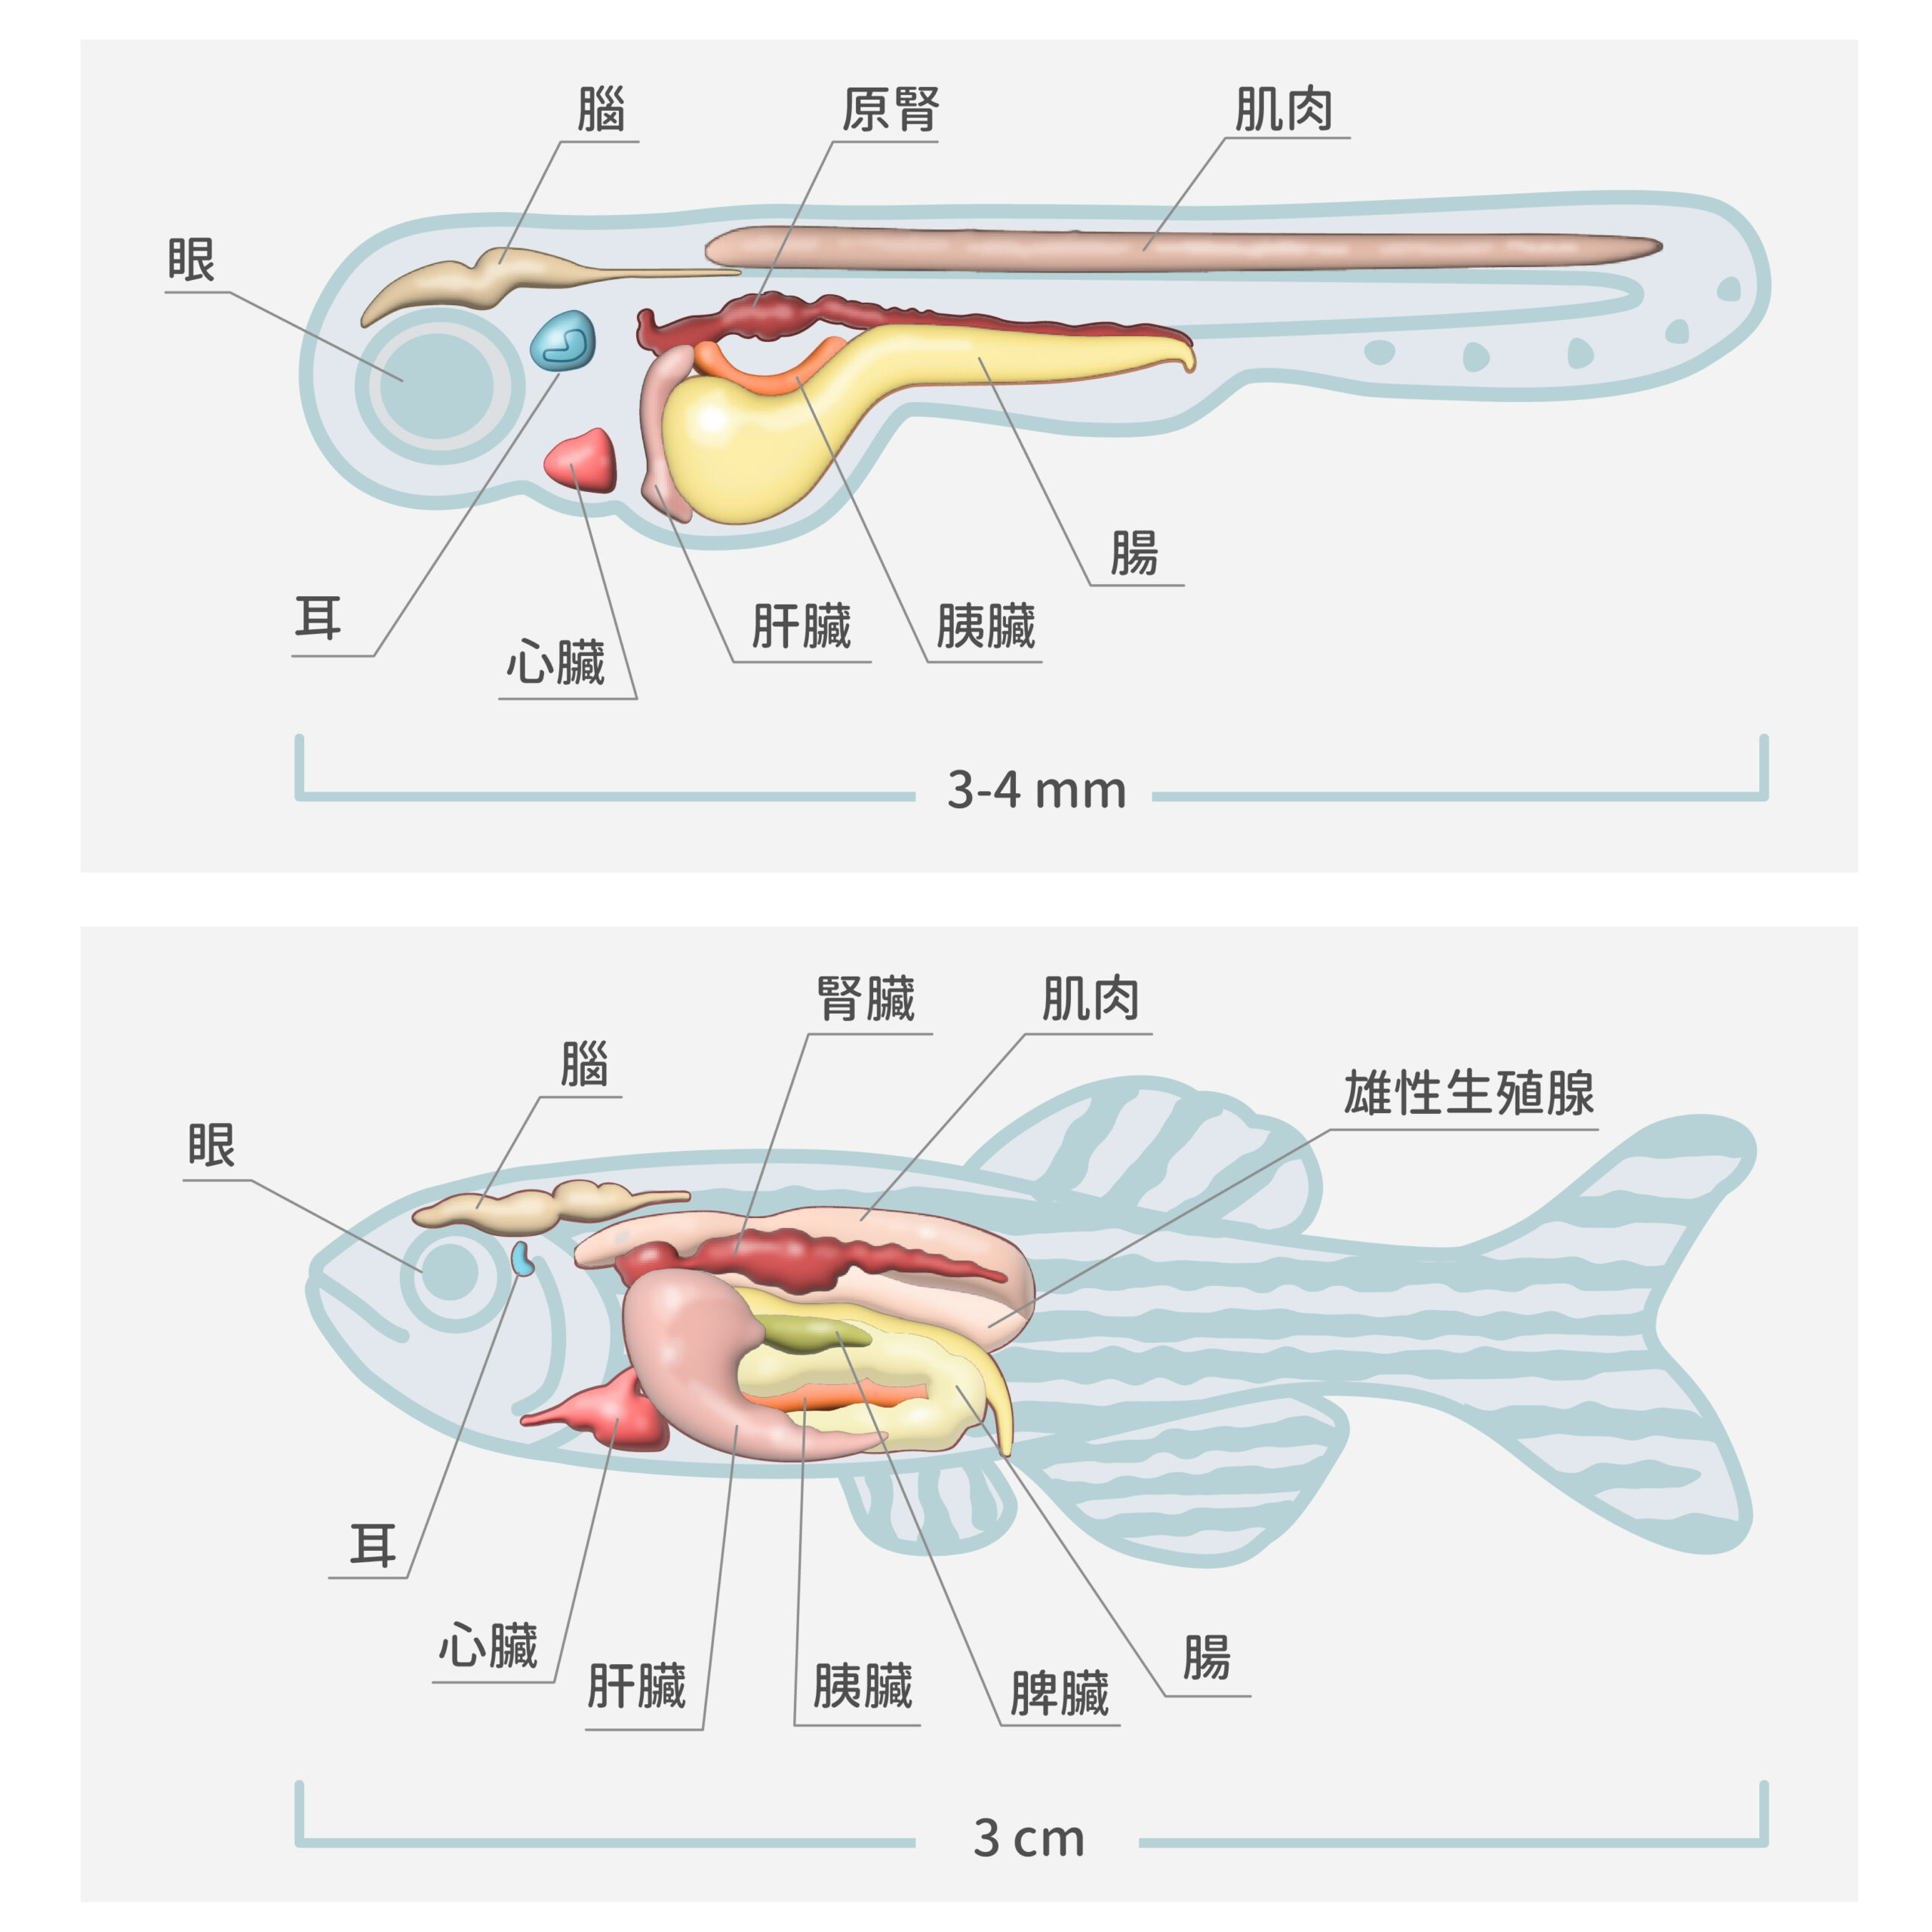 圖片為斑馬魚的仔魚（上圖）和成魚（下圖）的透視圖，仔魚年齡為受精之後第 3～21 天。斑馬魚當實驗材料的優點是：容易繁殖，生長週期不長，體積小，容易操作；更重要的是魚體扁平，容易拍攝大面積、高解析度的細胞影像。圖│研之有物（資料來源｜J Clin Invest.）